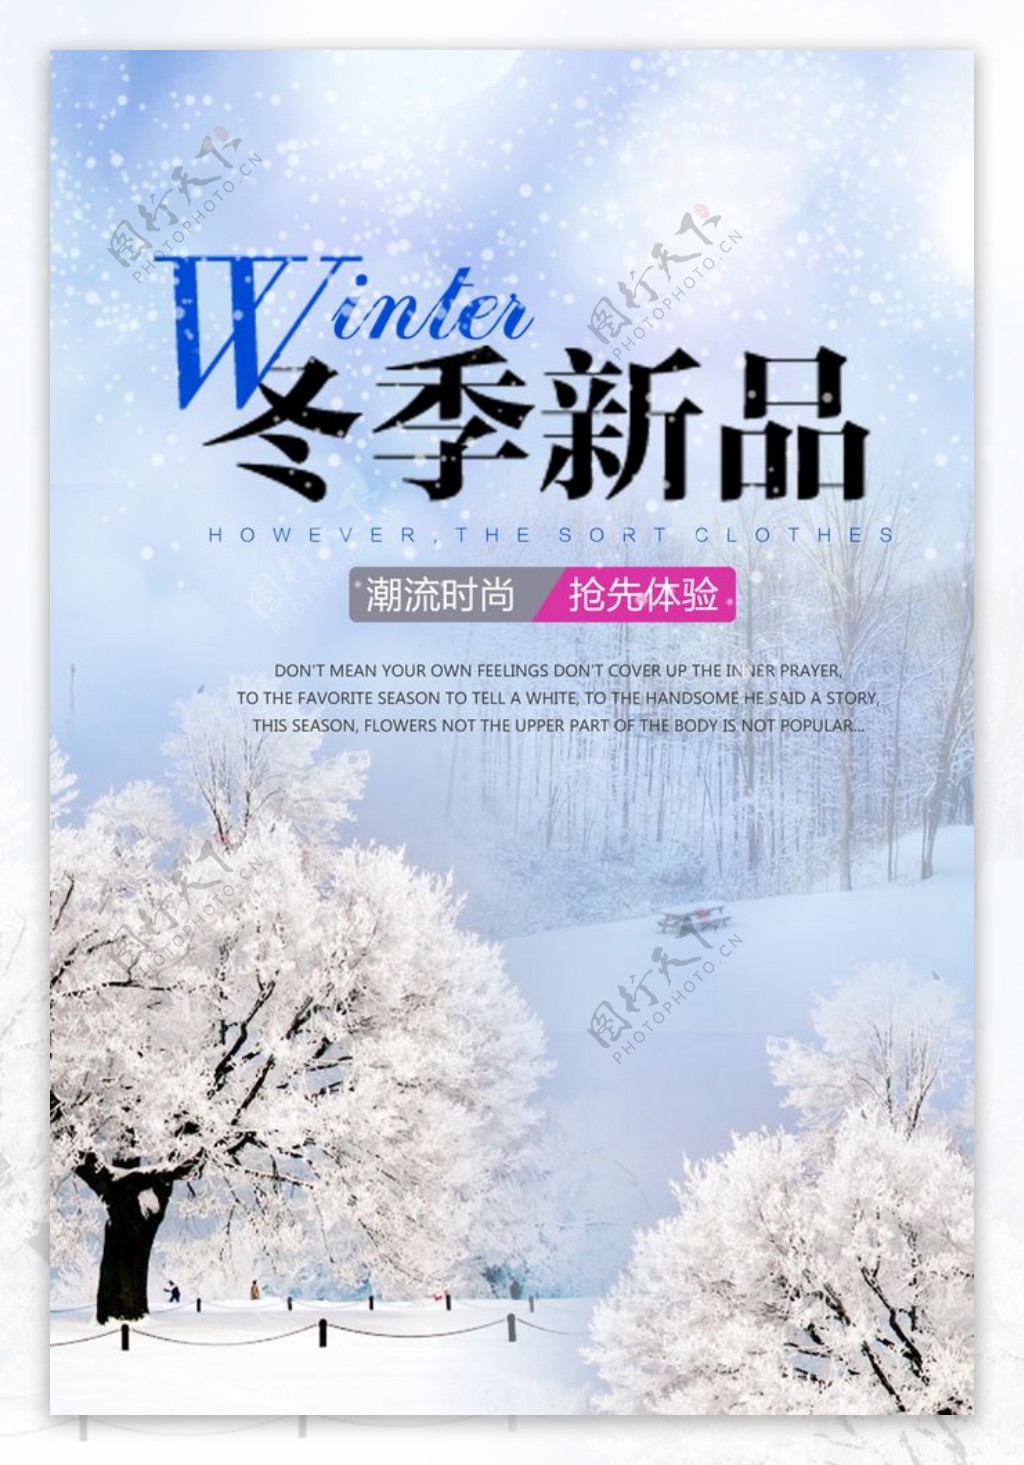 冬季新品促销海报